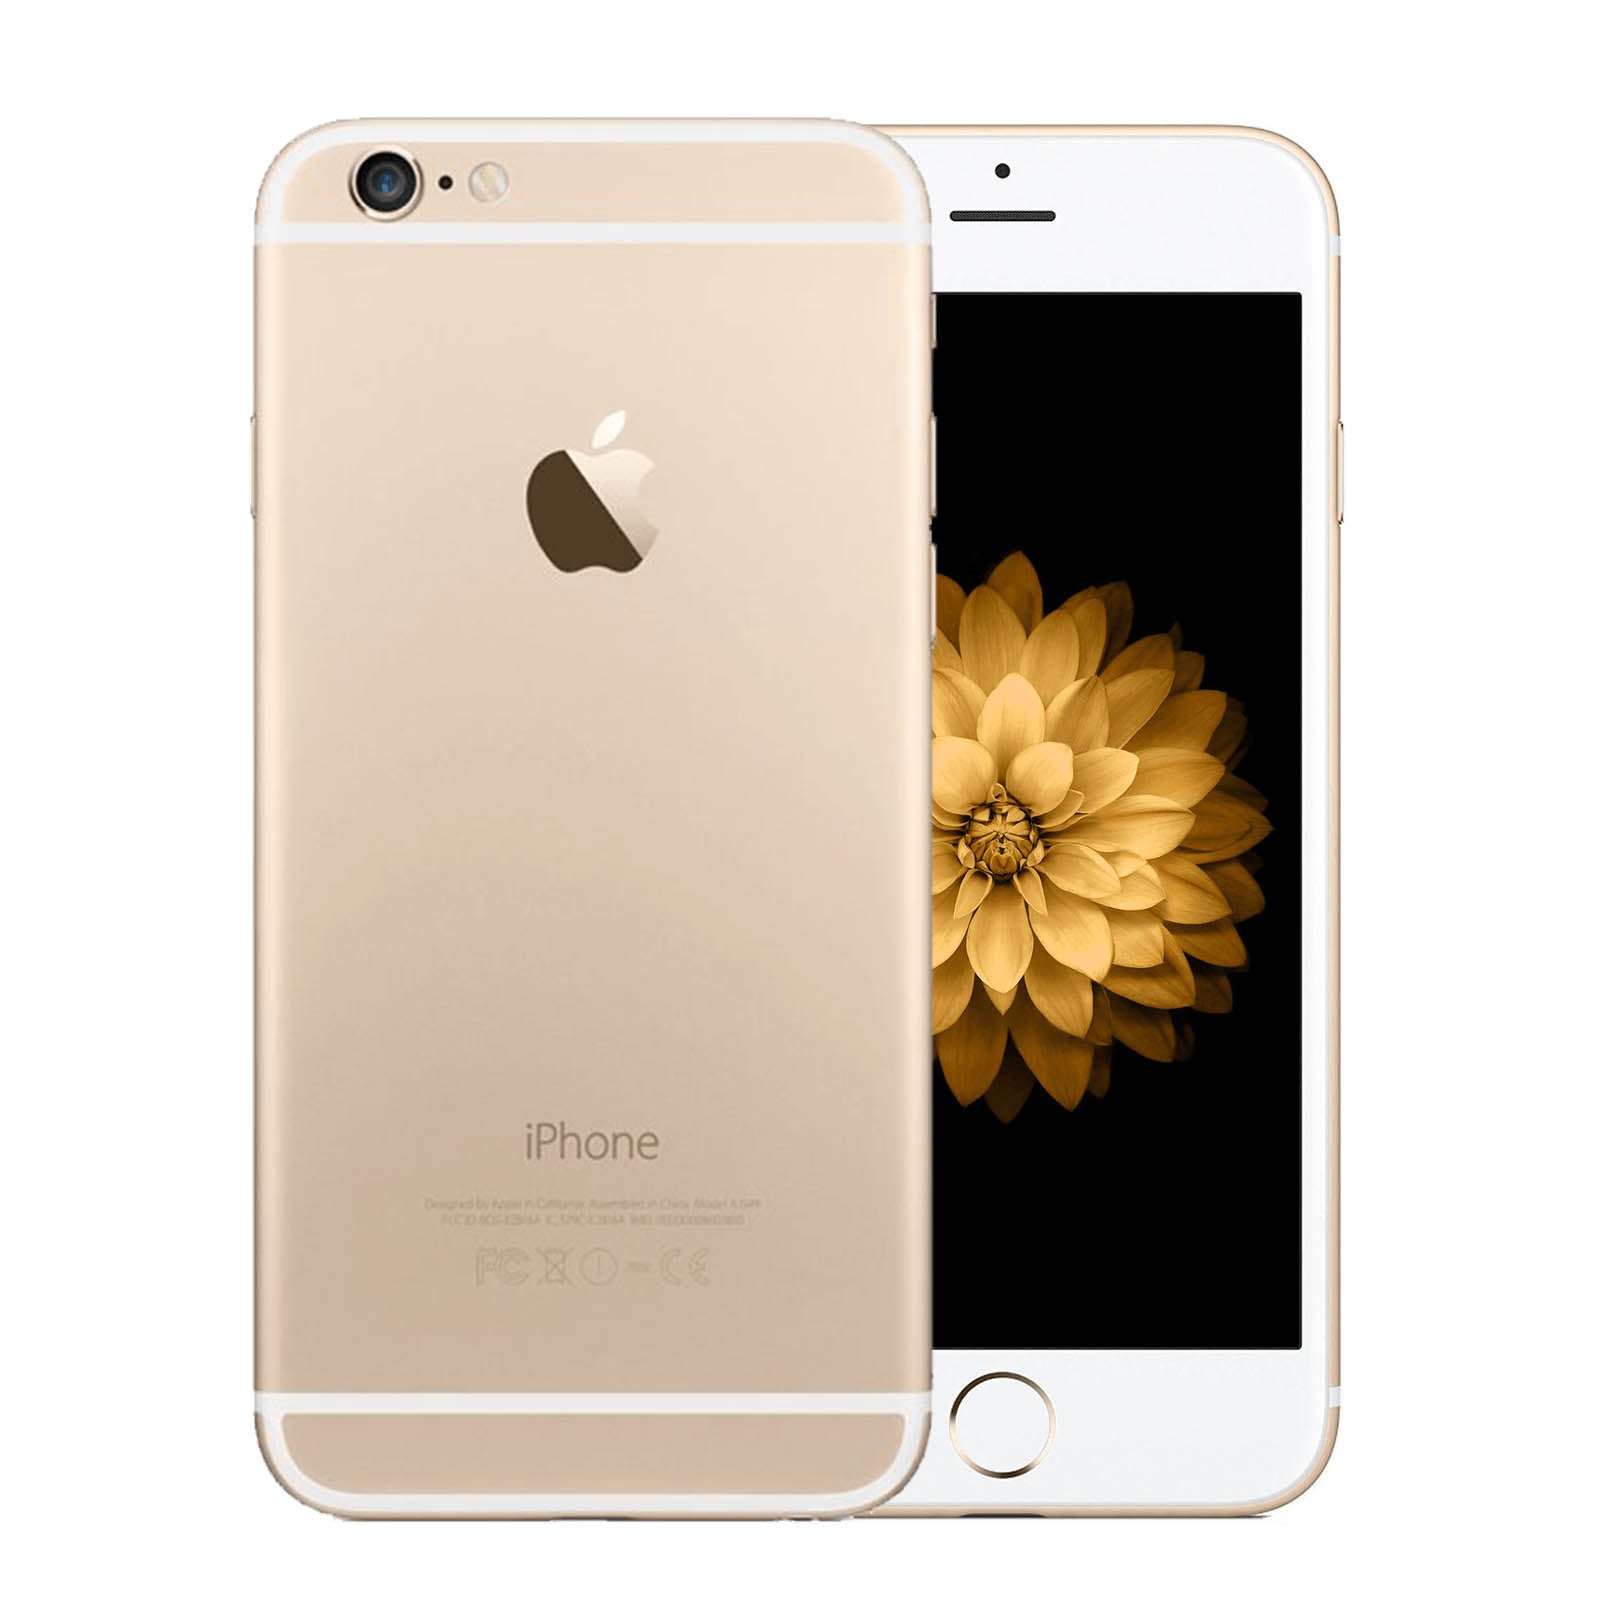 iPhone 6 Gold 64 GB au - スマートフォン本体